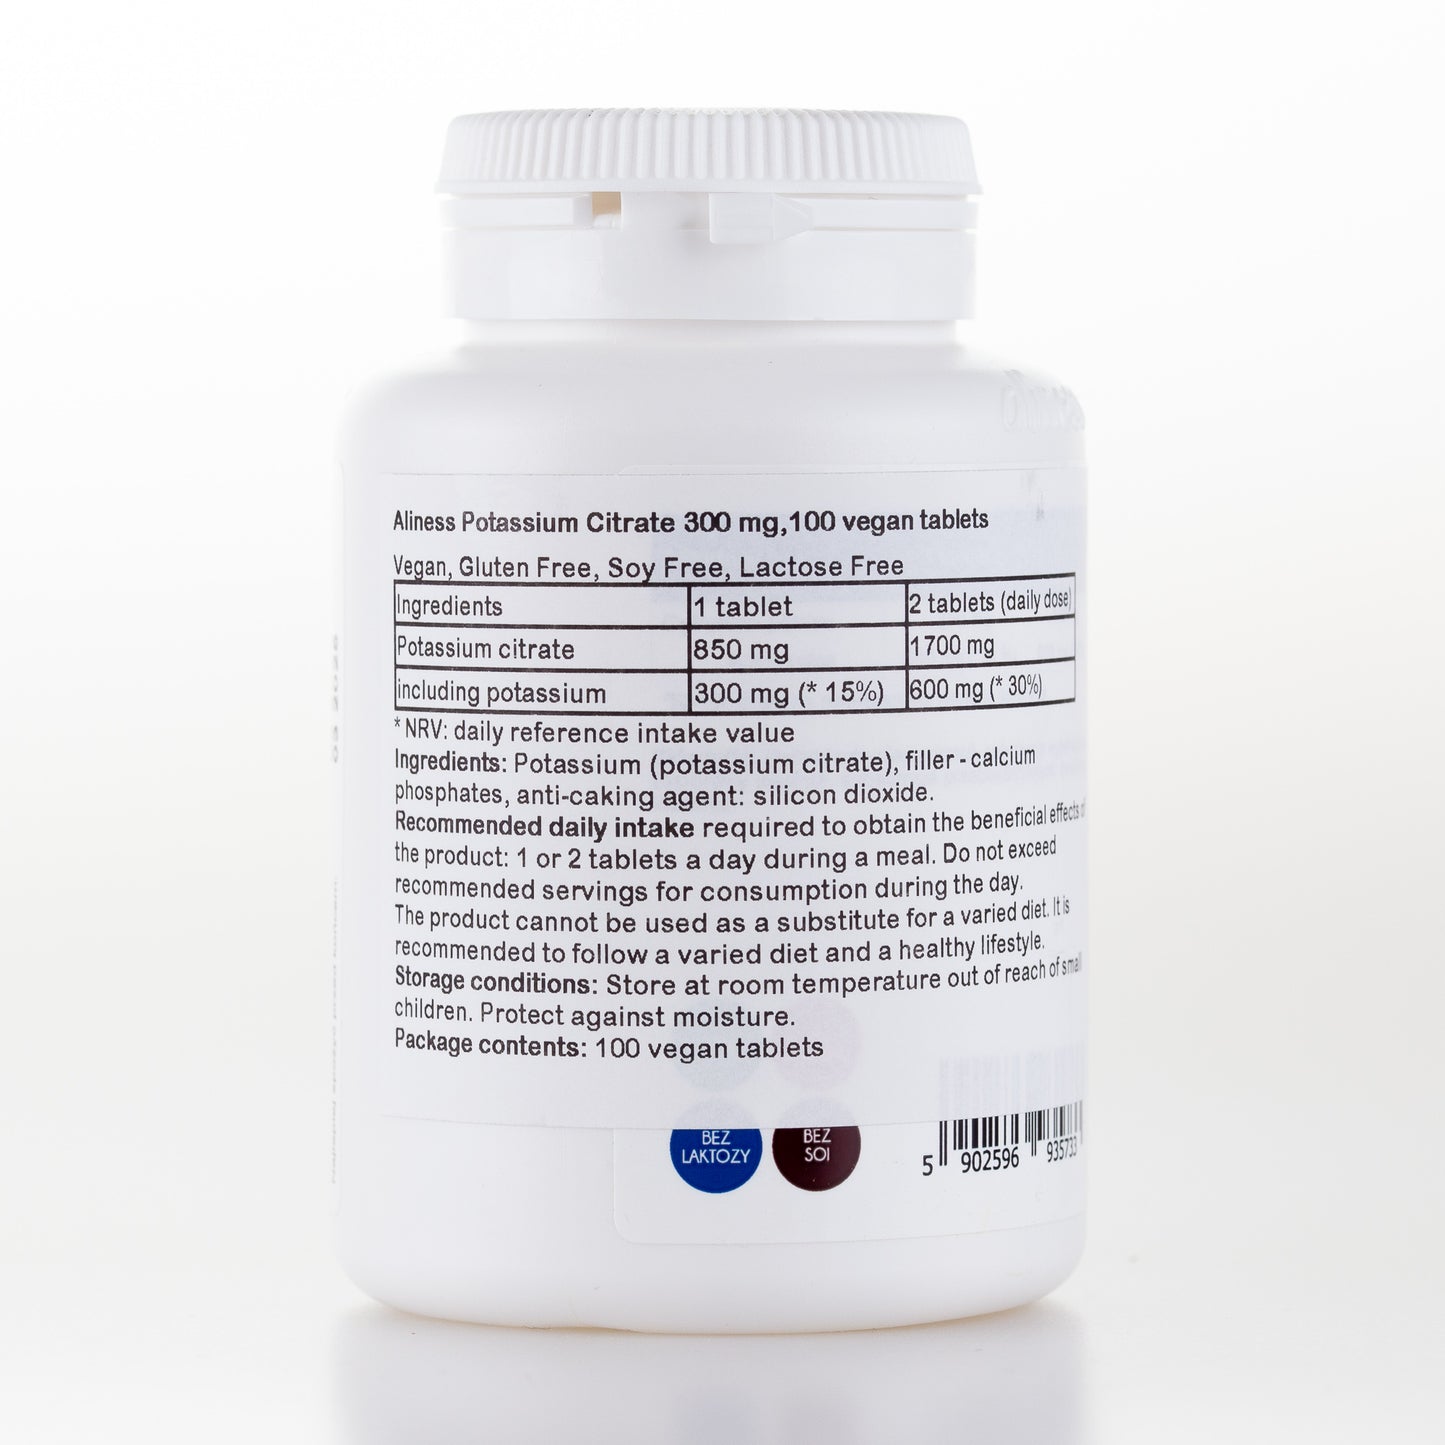 Potassium Citrate 300 mg, 100 vegan tablets